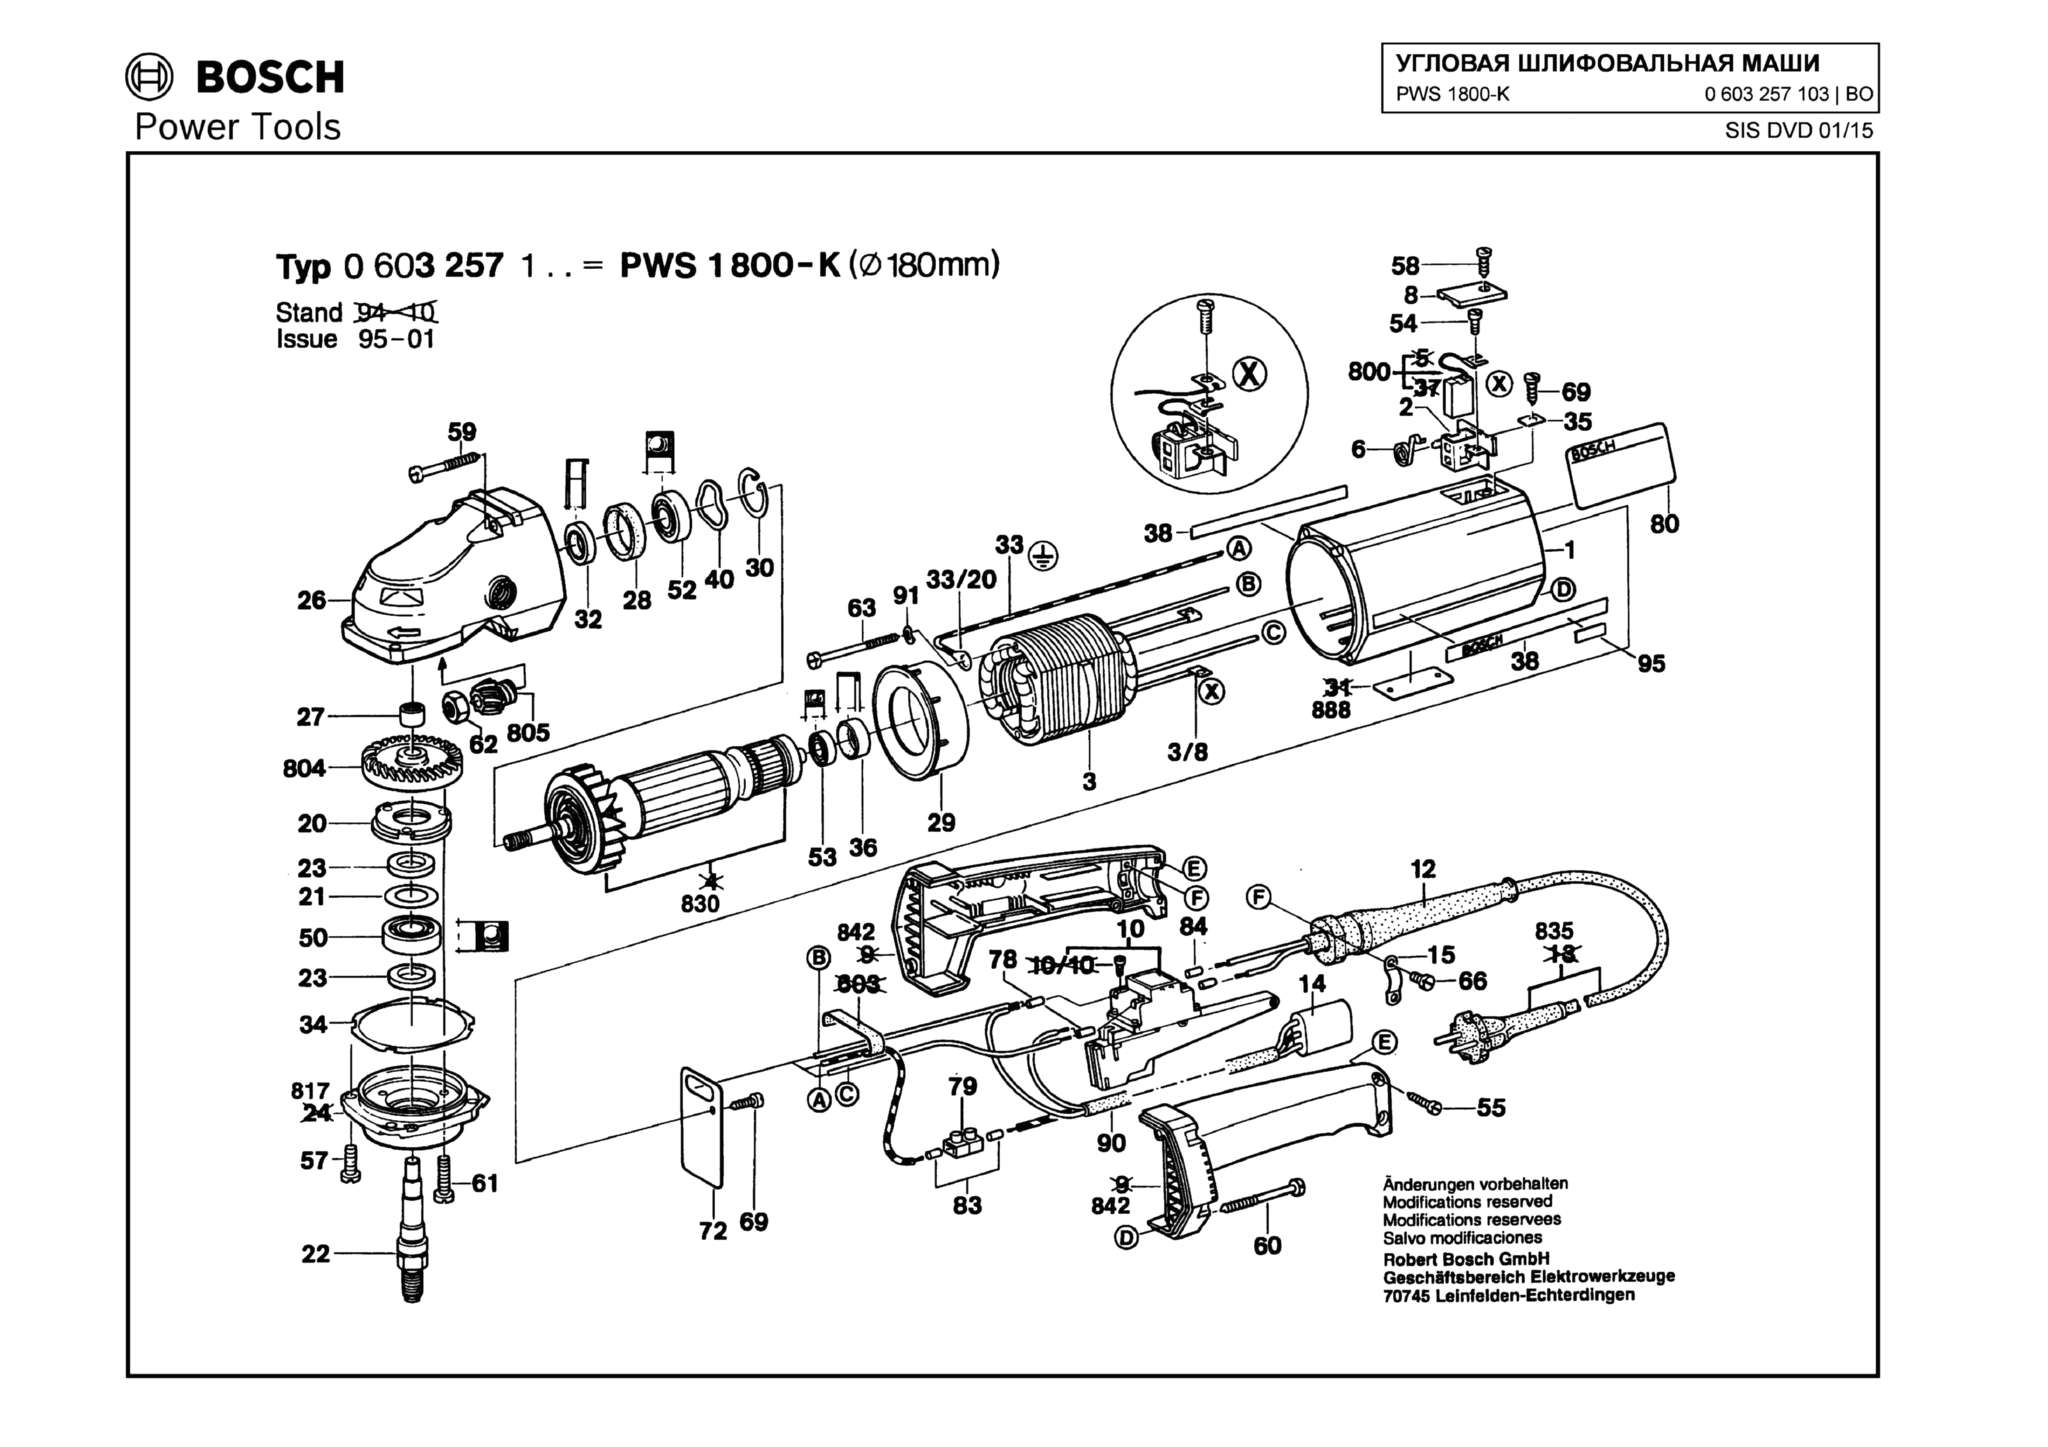 Запчасти, схема и деталировка Bosch PWS 1800-K (ТИП 0603257103)